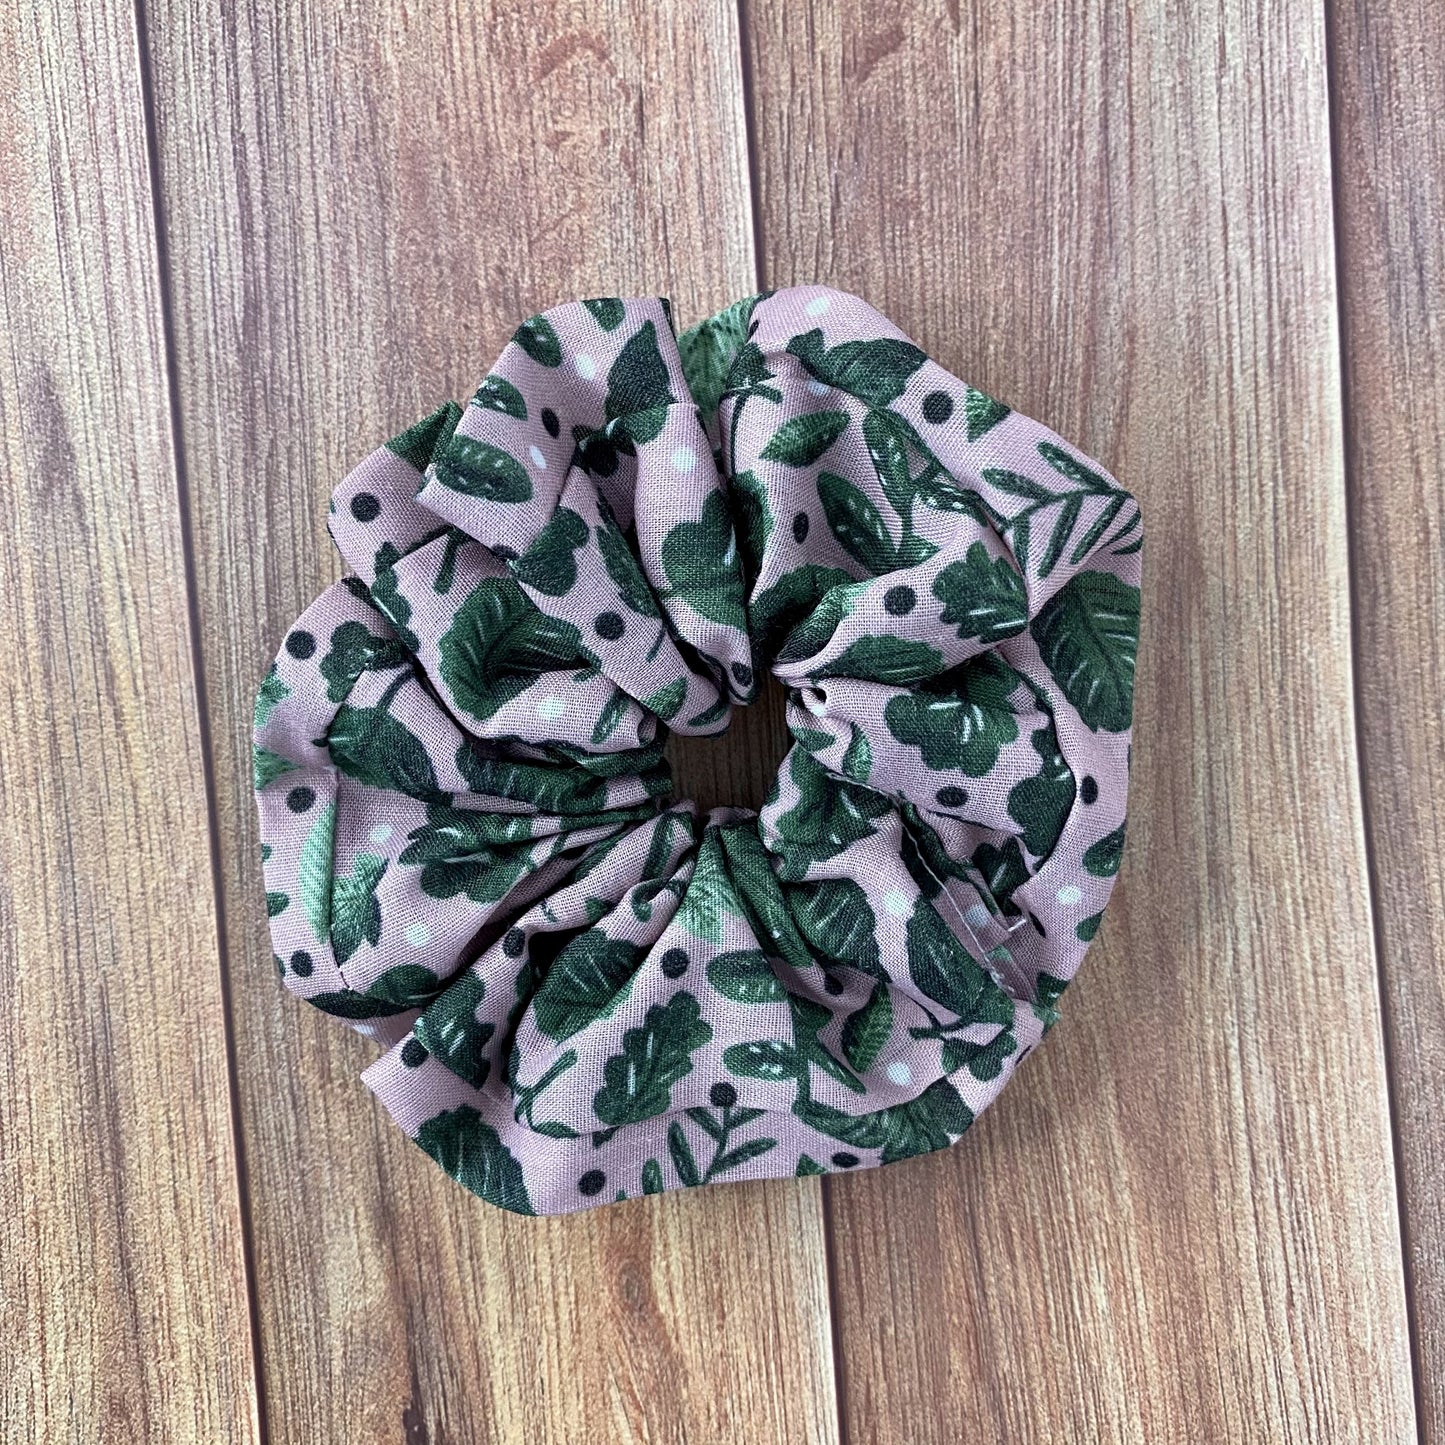 green scrunchie on wooden background